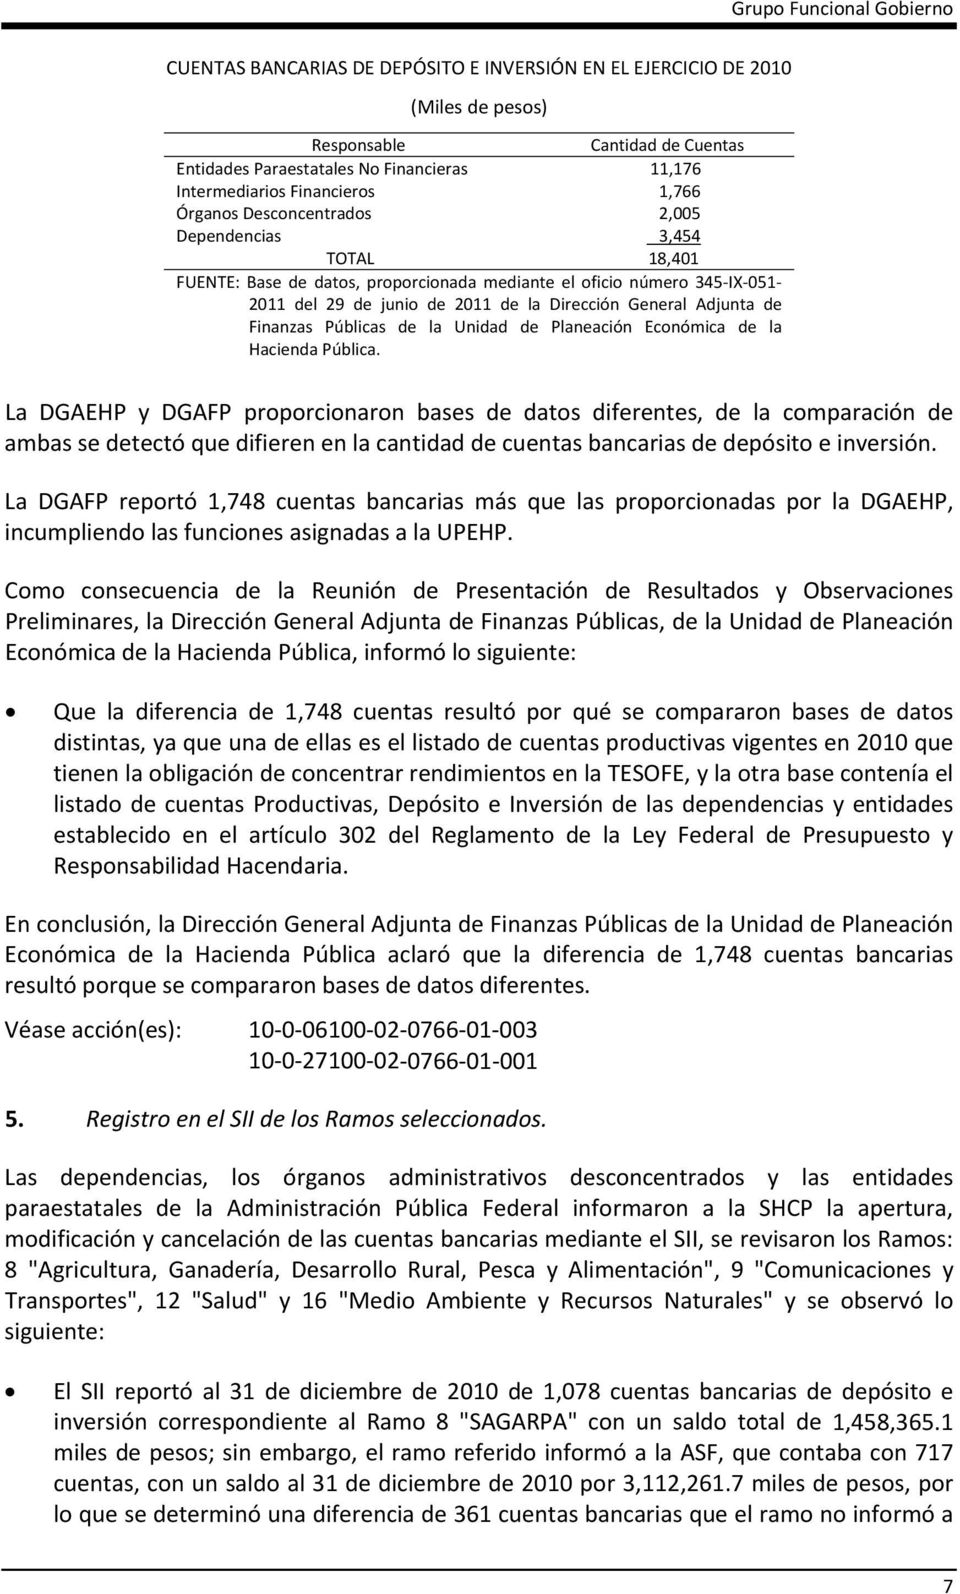 Finanzas Públicas de la Unidad de Planeación Económica de la Hacienda Pública.